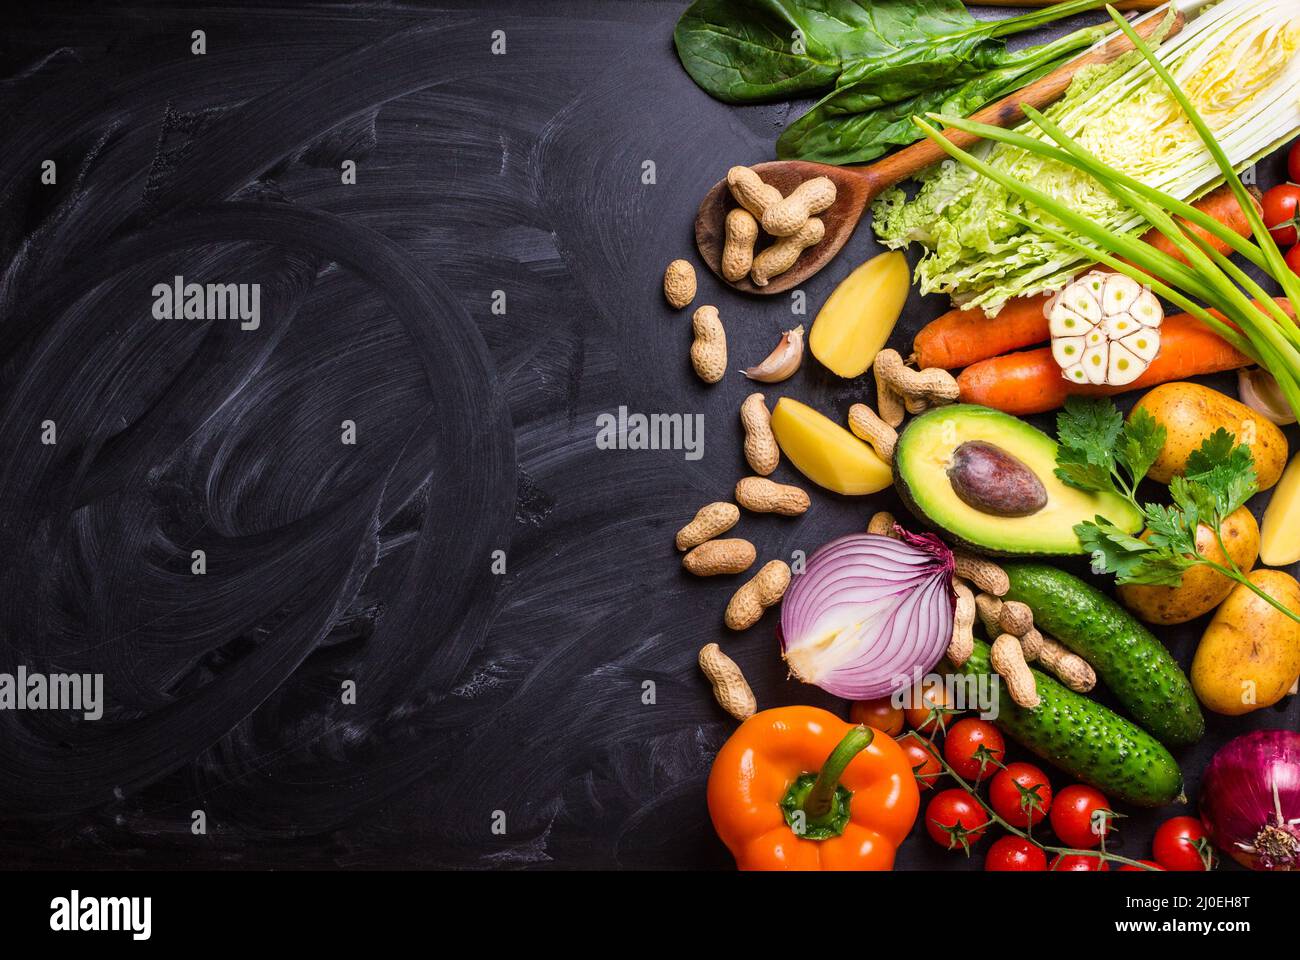 Cadre de l'alimentation avec des légumes Banque D'Images